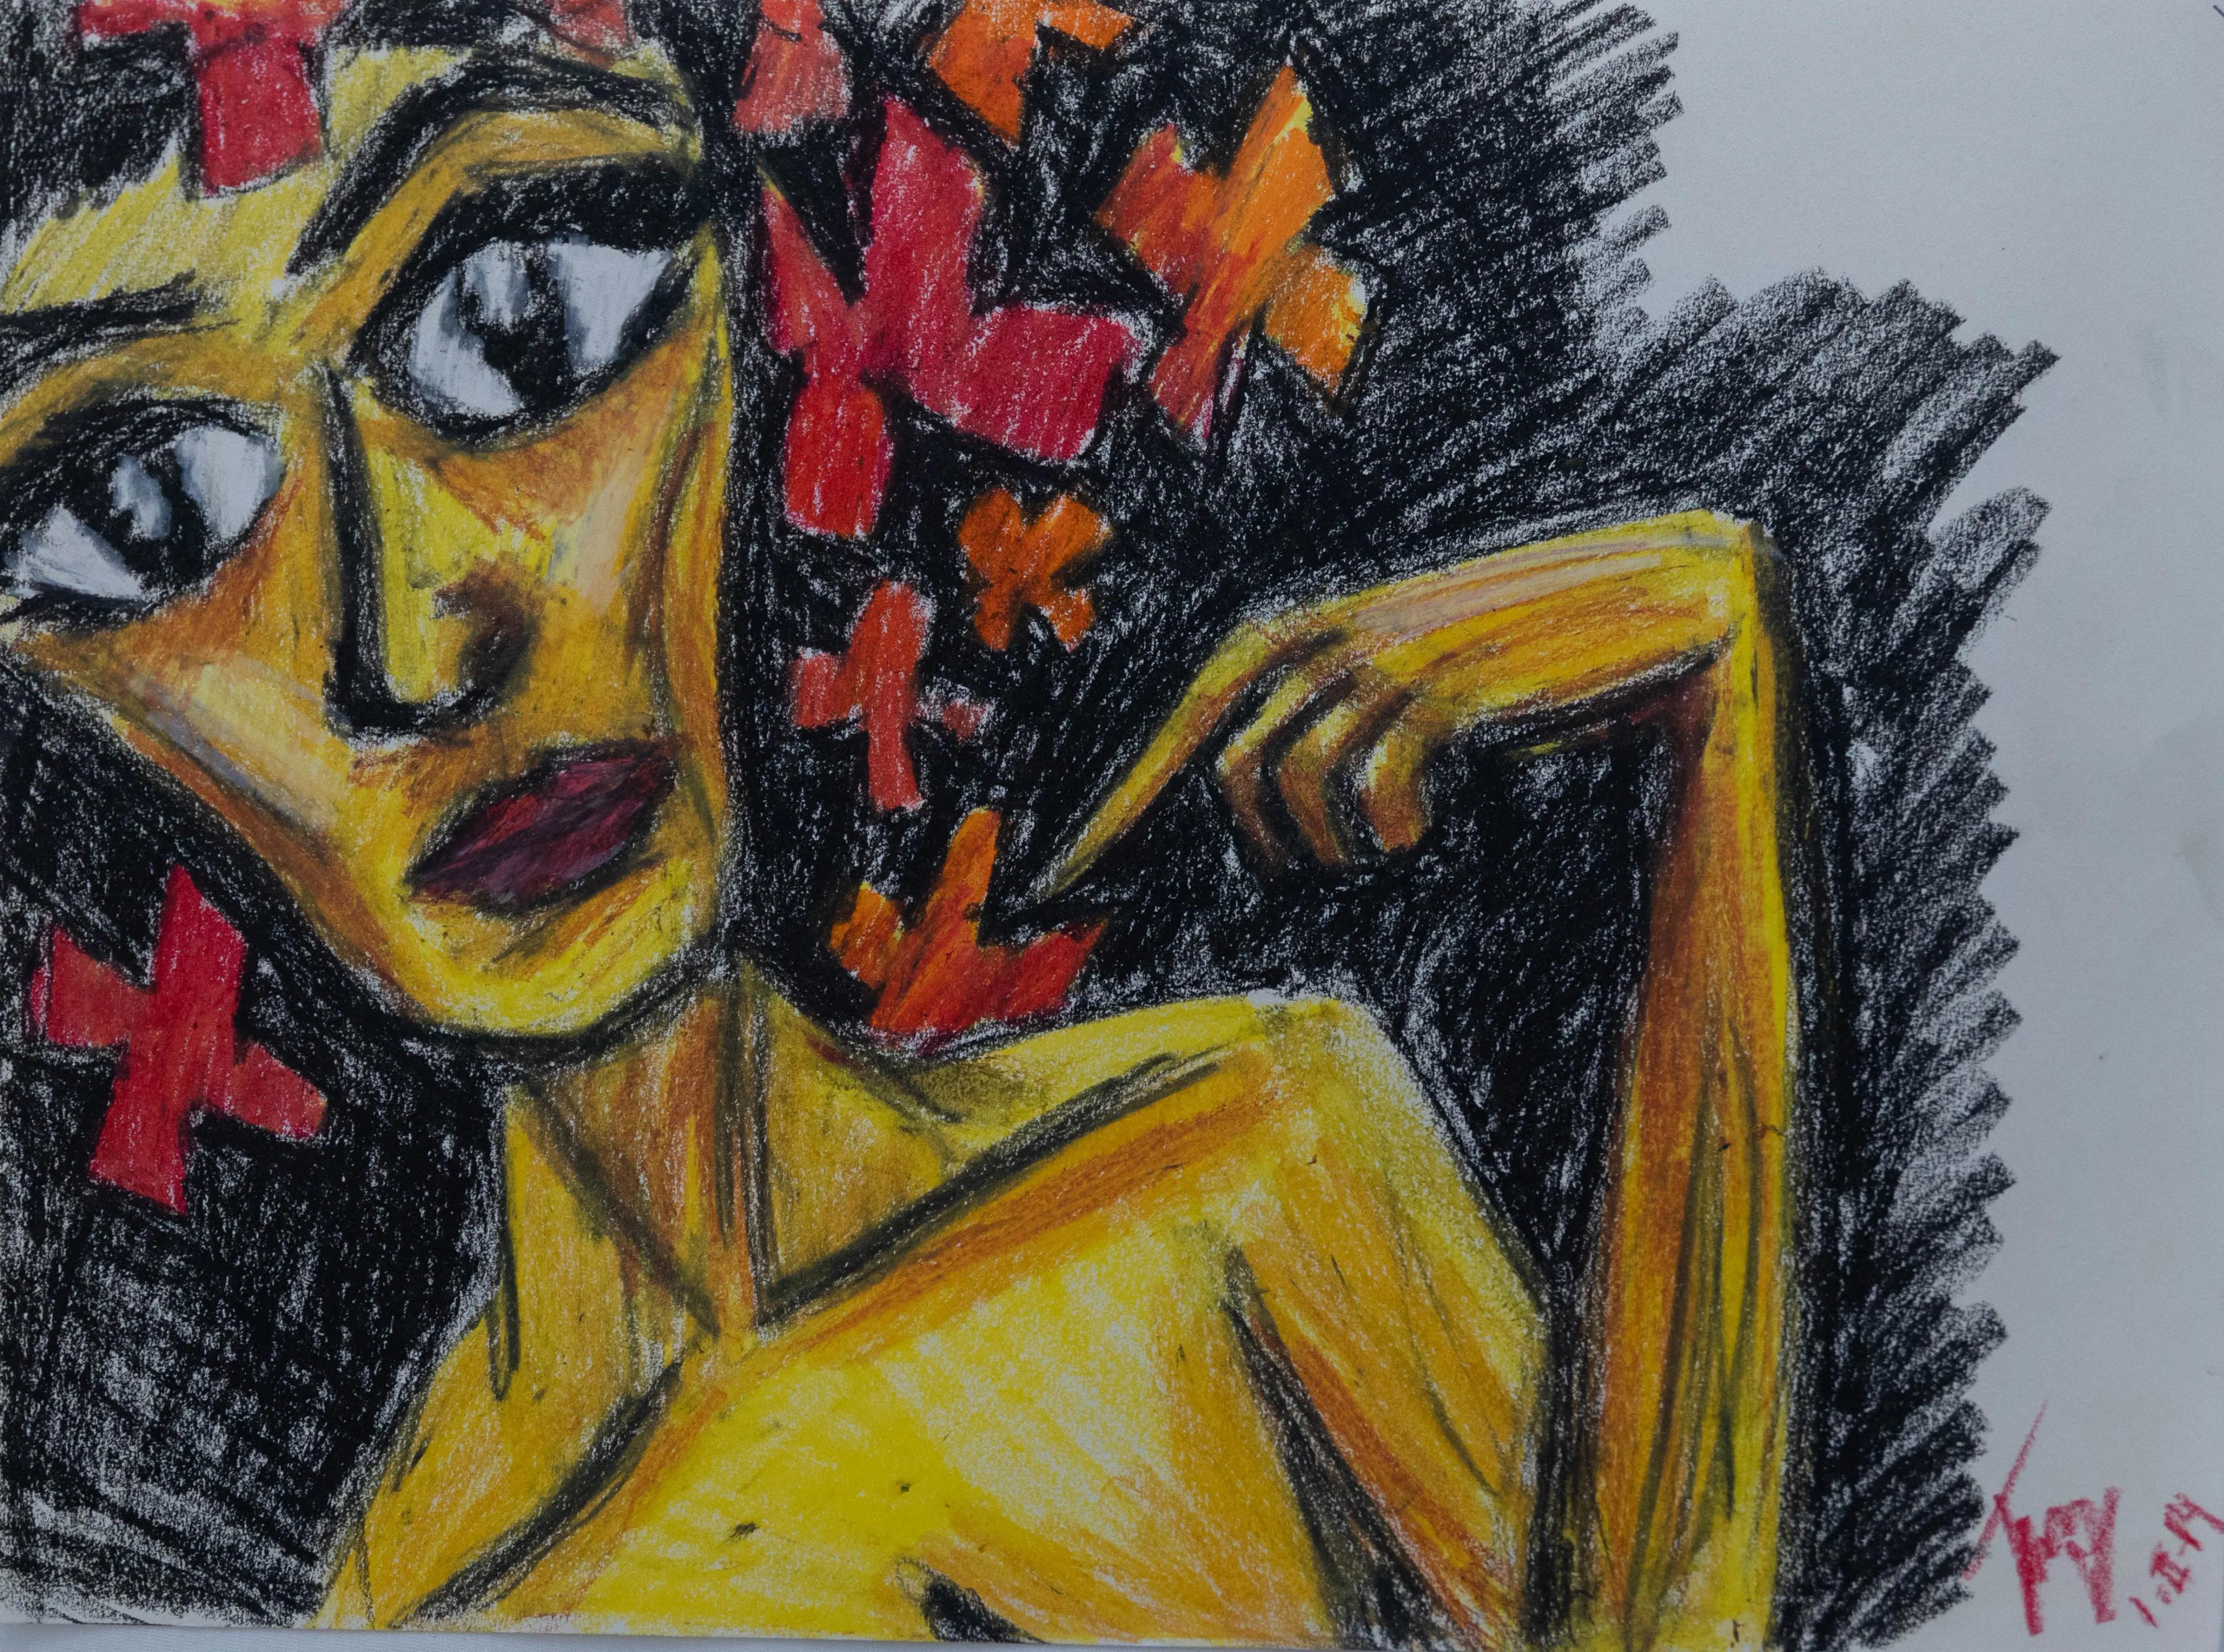 La dama de las flores - Crazy Art - Lámina en ceras (2)-2.jpg